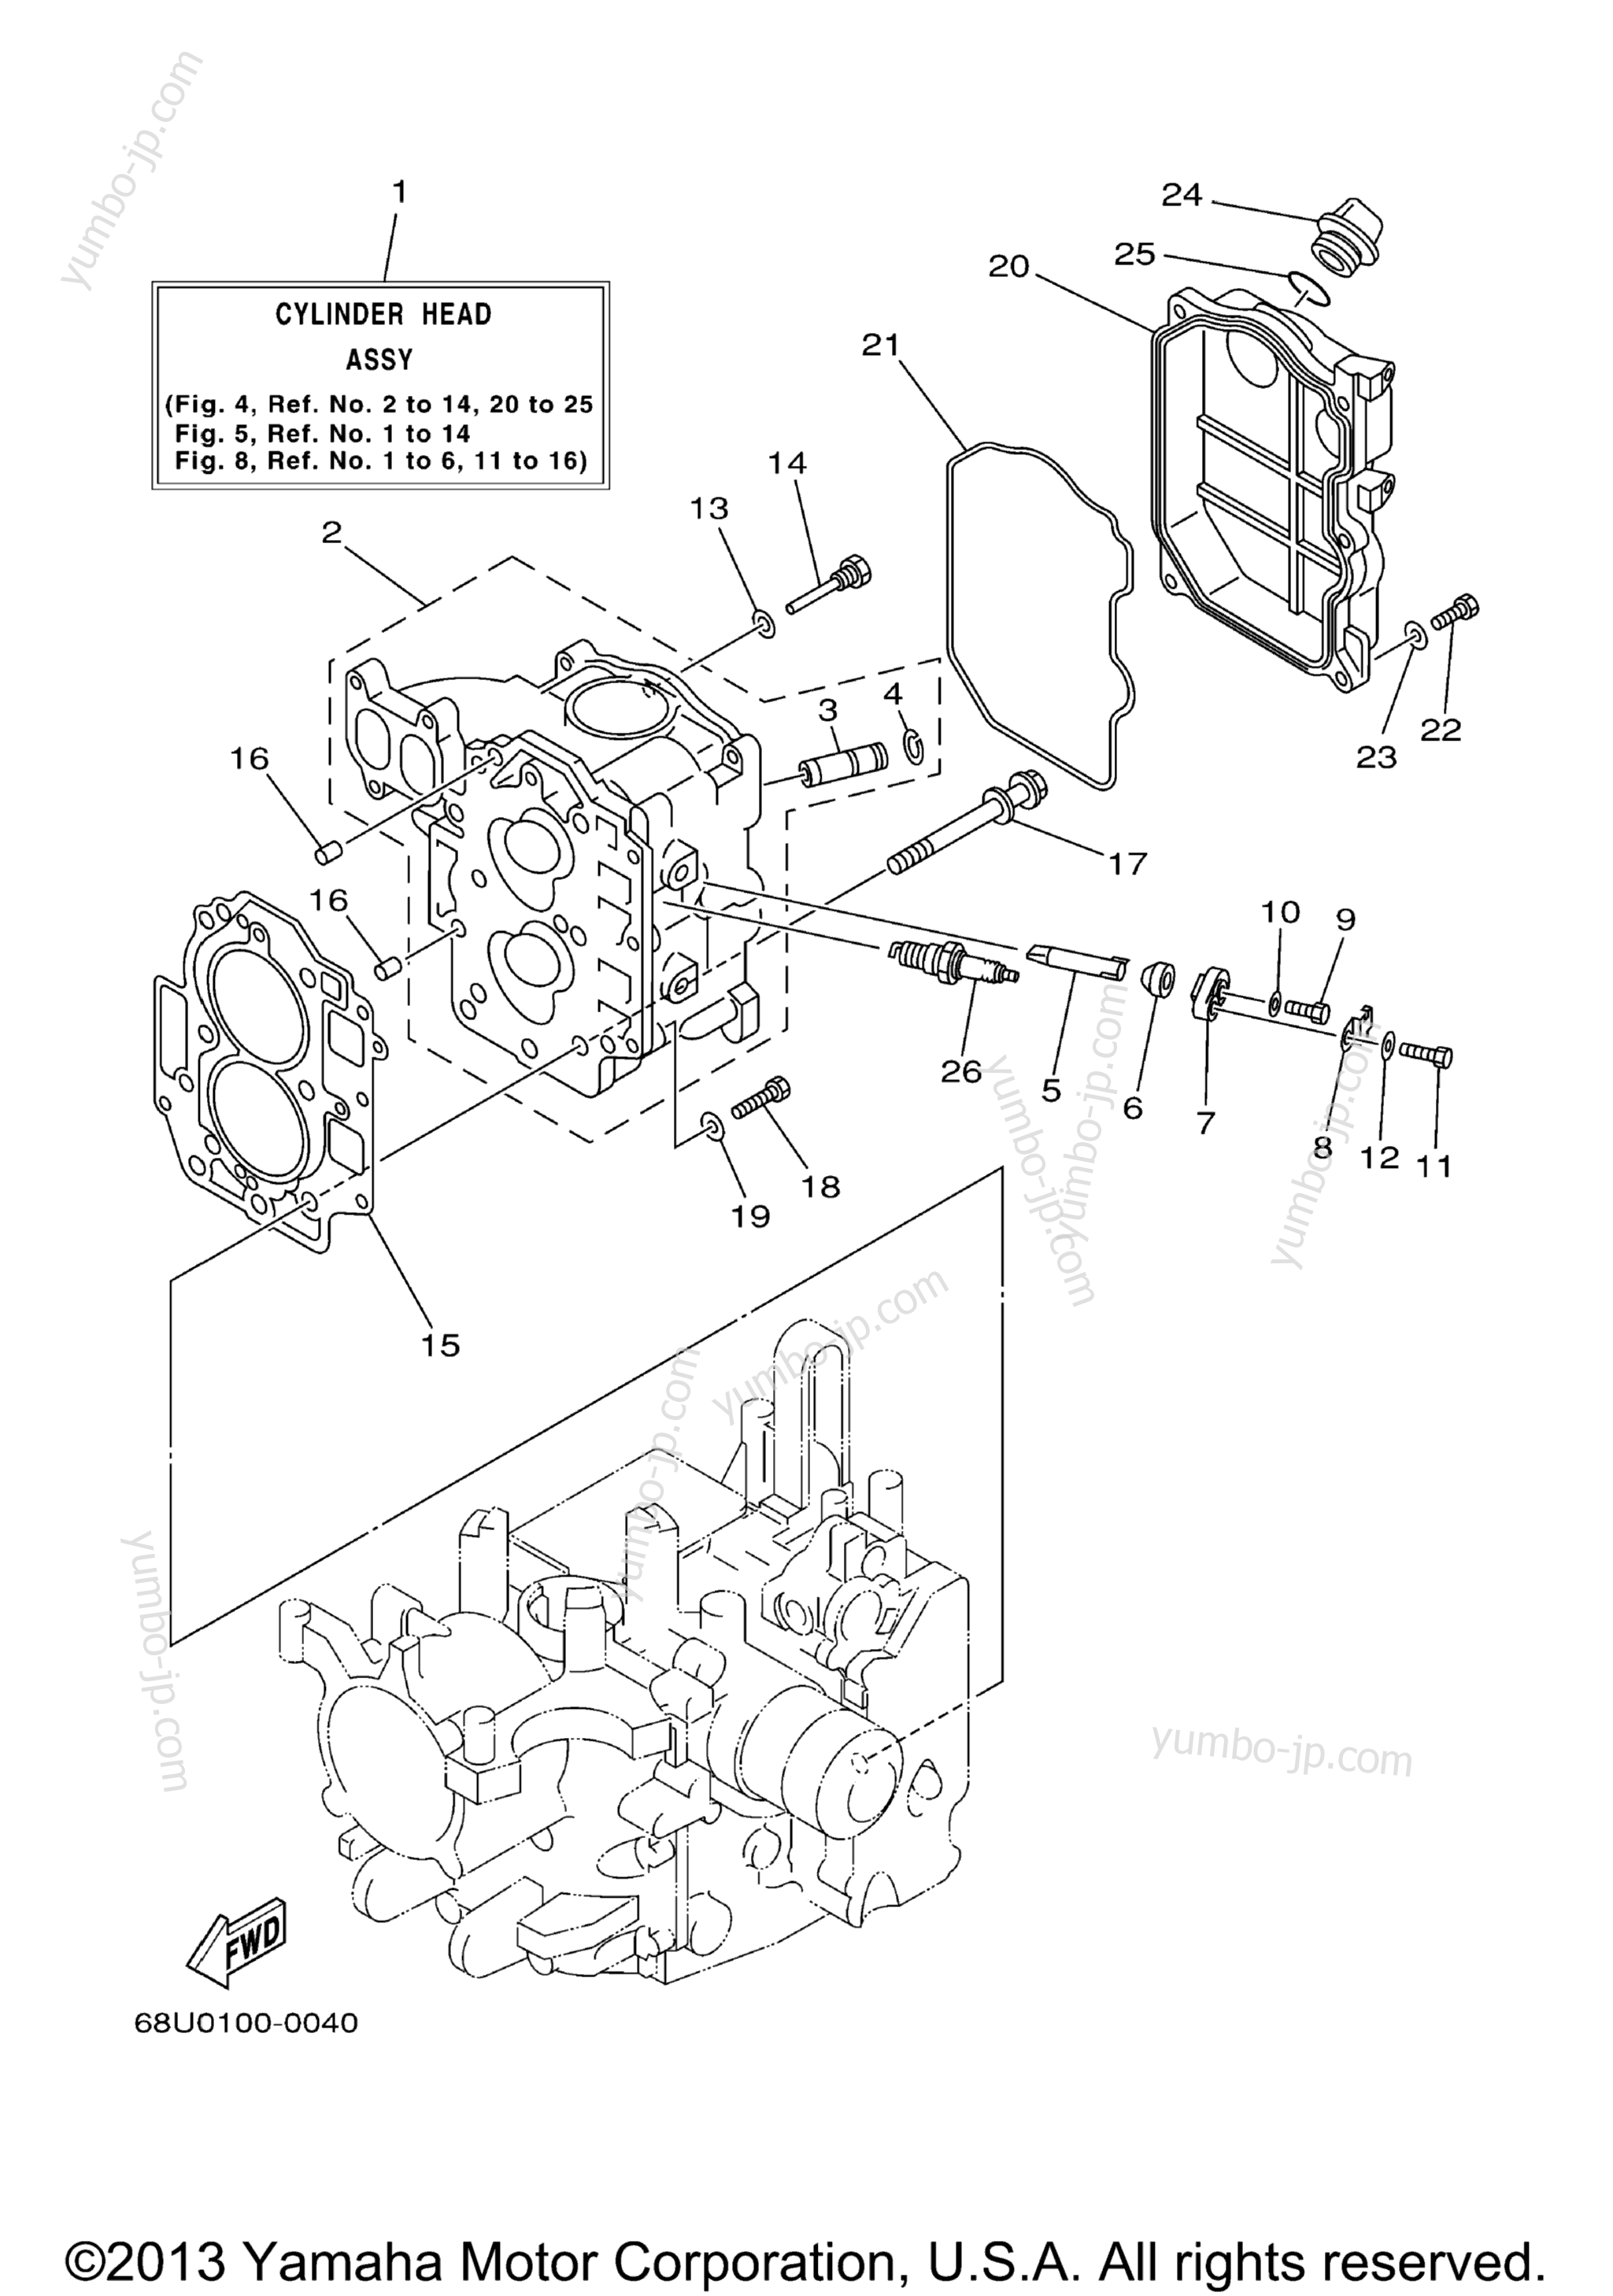 Cylinder Crankcase 2 для лодочных моторов YAMAHA F25ESHZ_ESRZ_TLRZ (F25MLHZ) 2001 г.